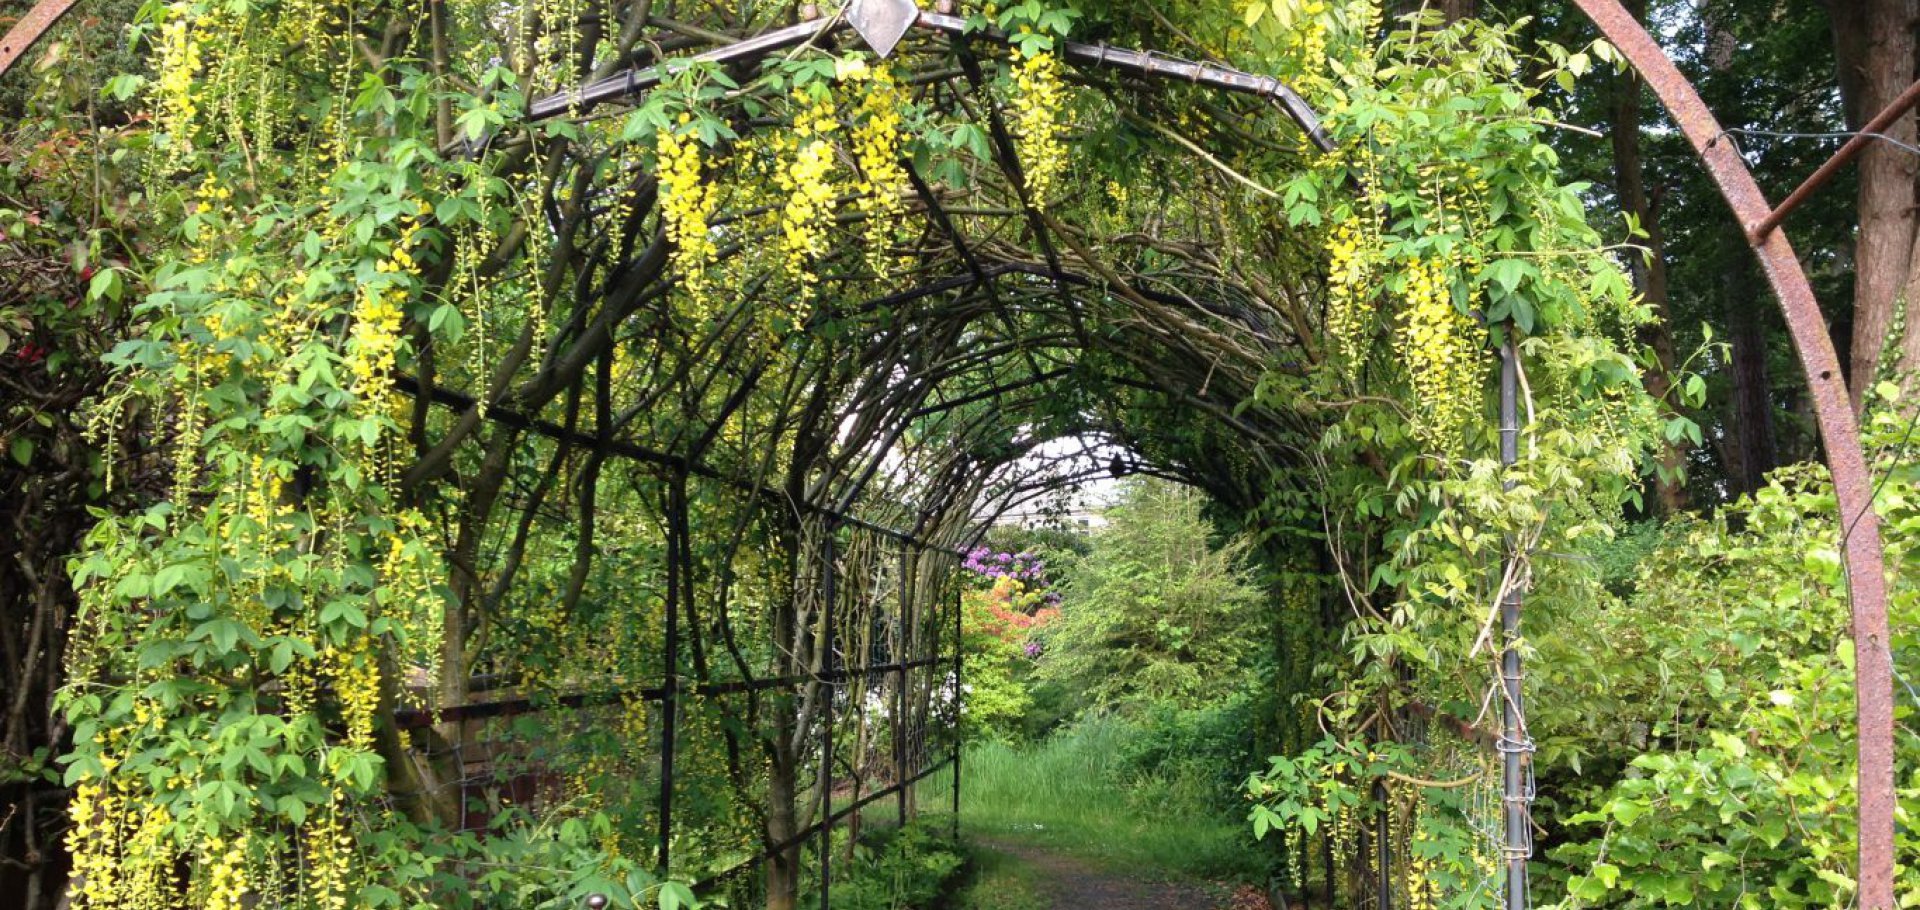 laburnum arch into walled garden